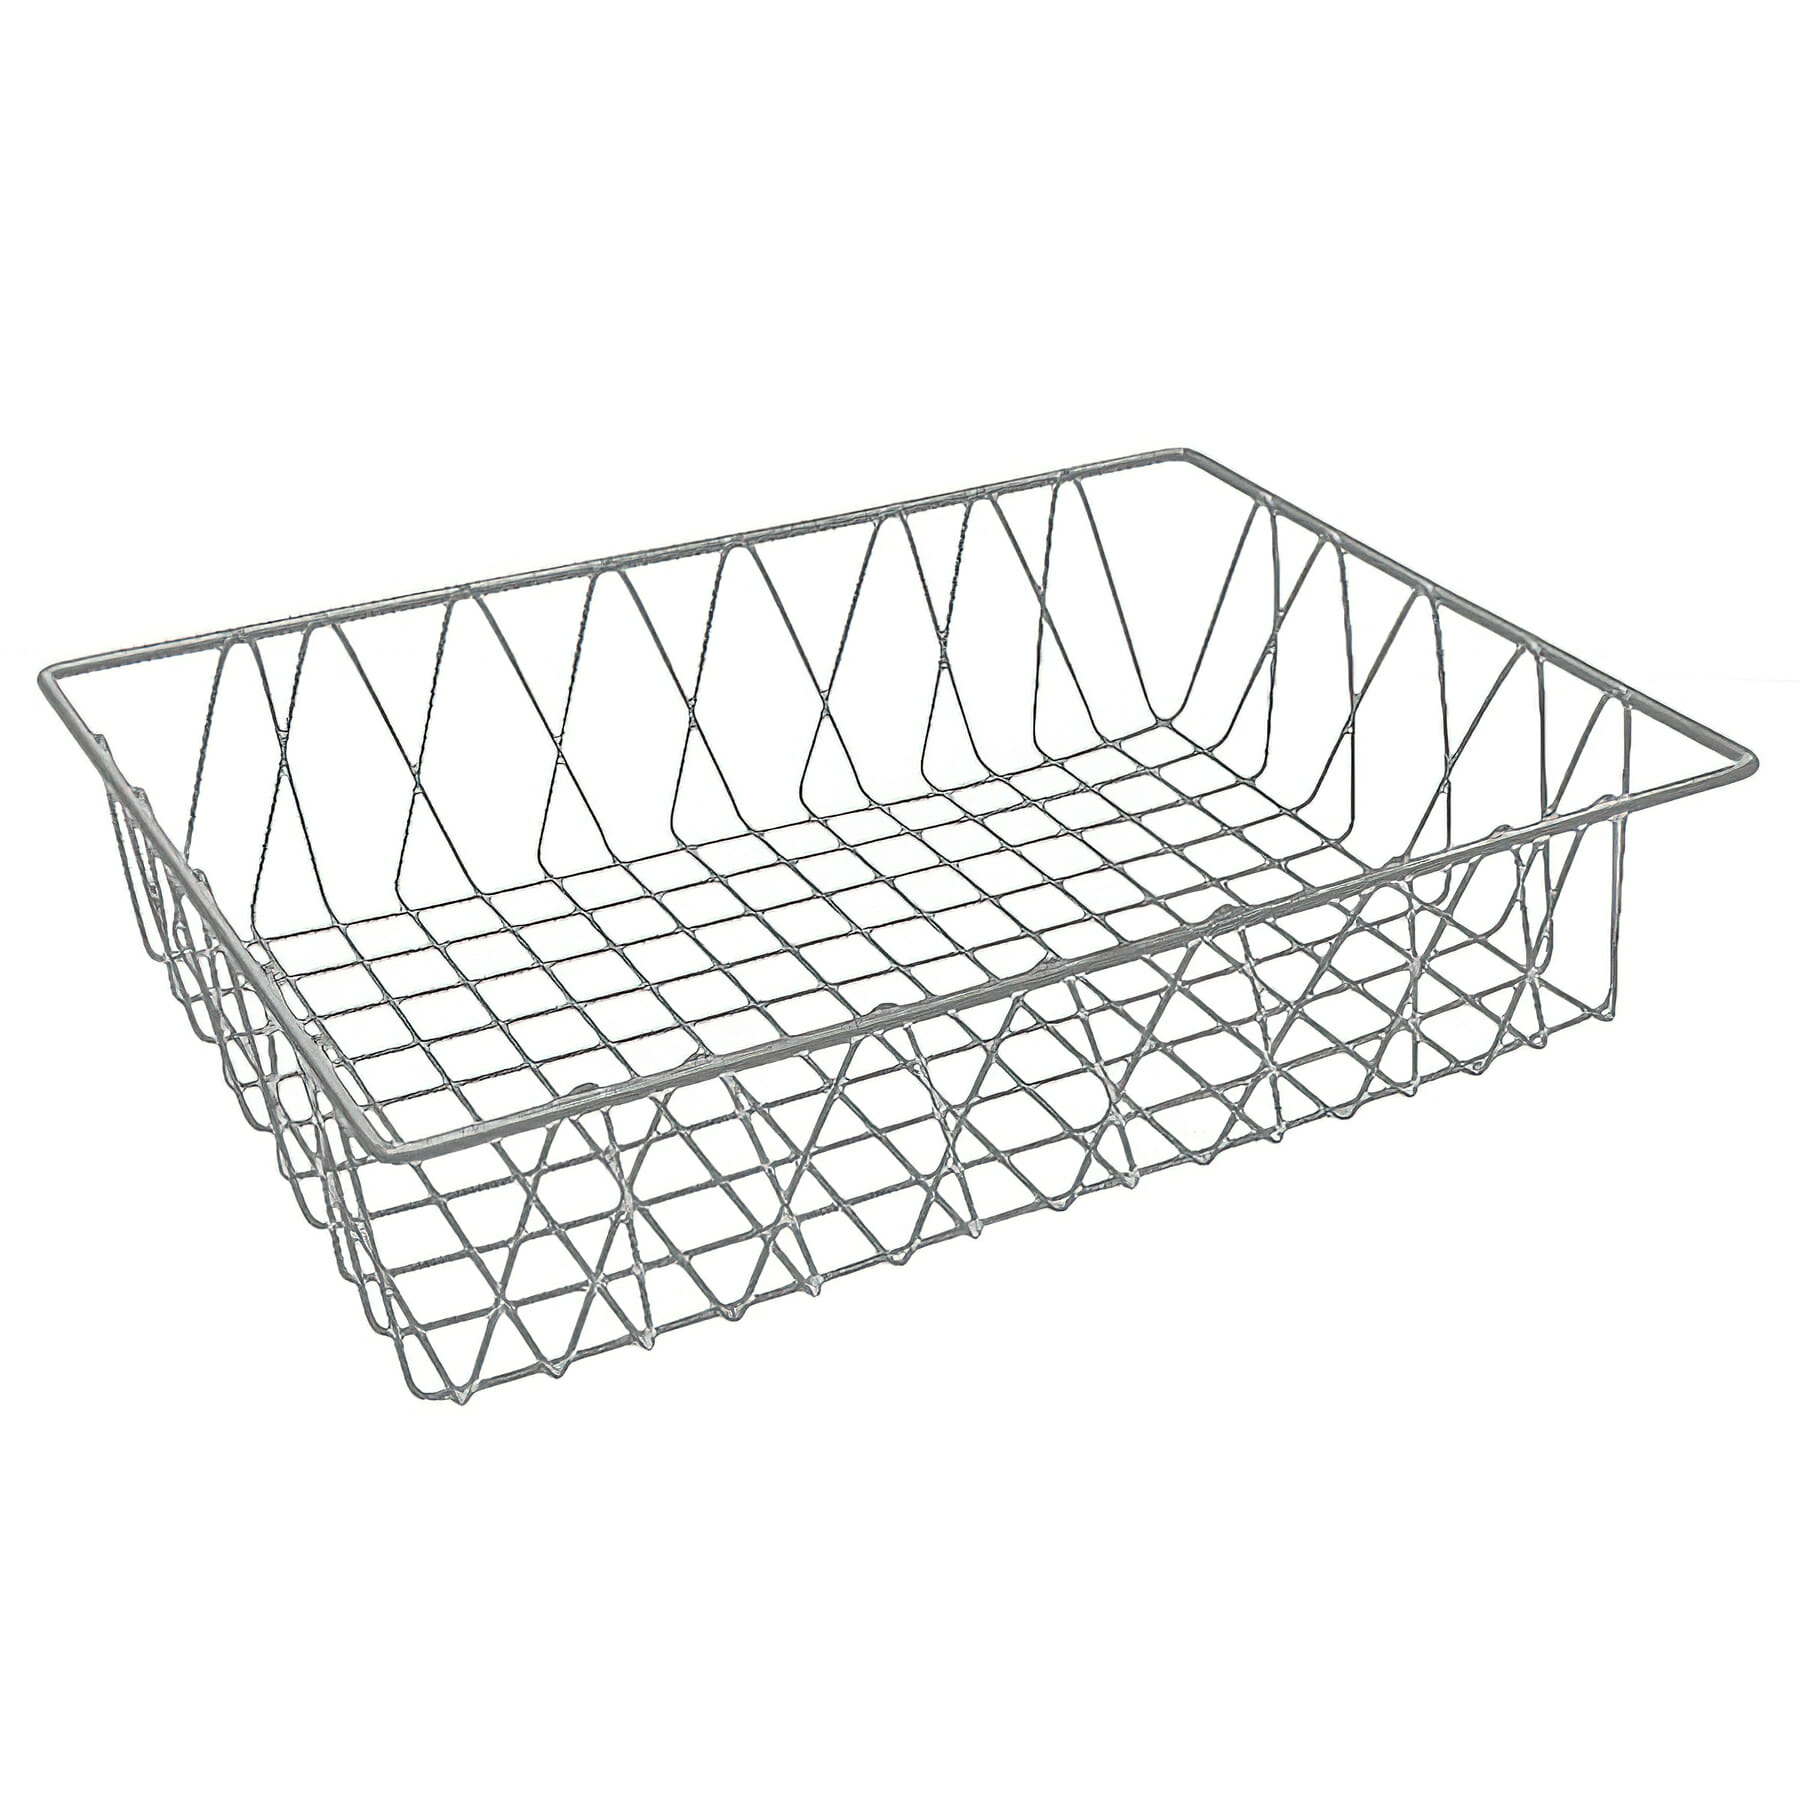 18" x 12" Rectangular Wire Pastry Basket, 4" deep (fits IR-900, IR-902, IR-906, IR-907, IR-951, IR-951T, IR-952, IR-952T)